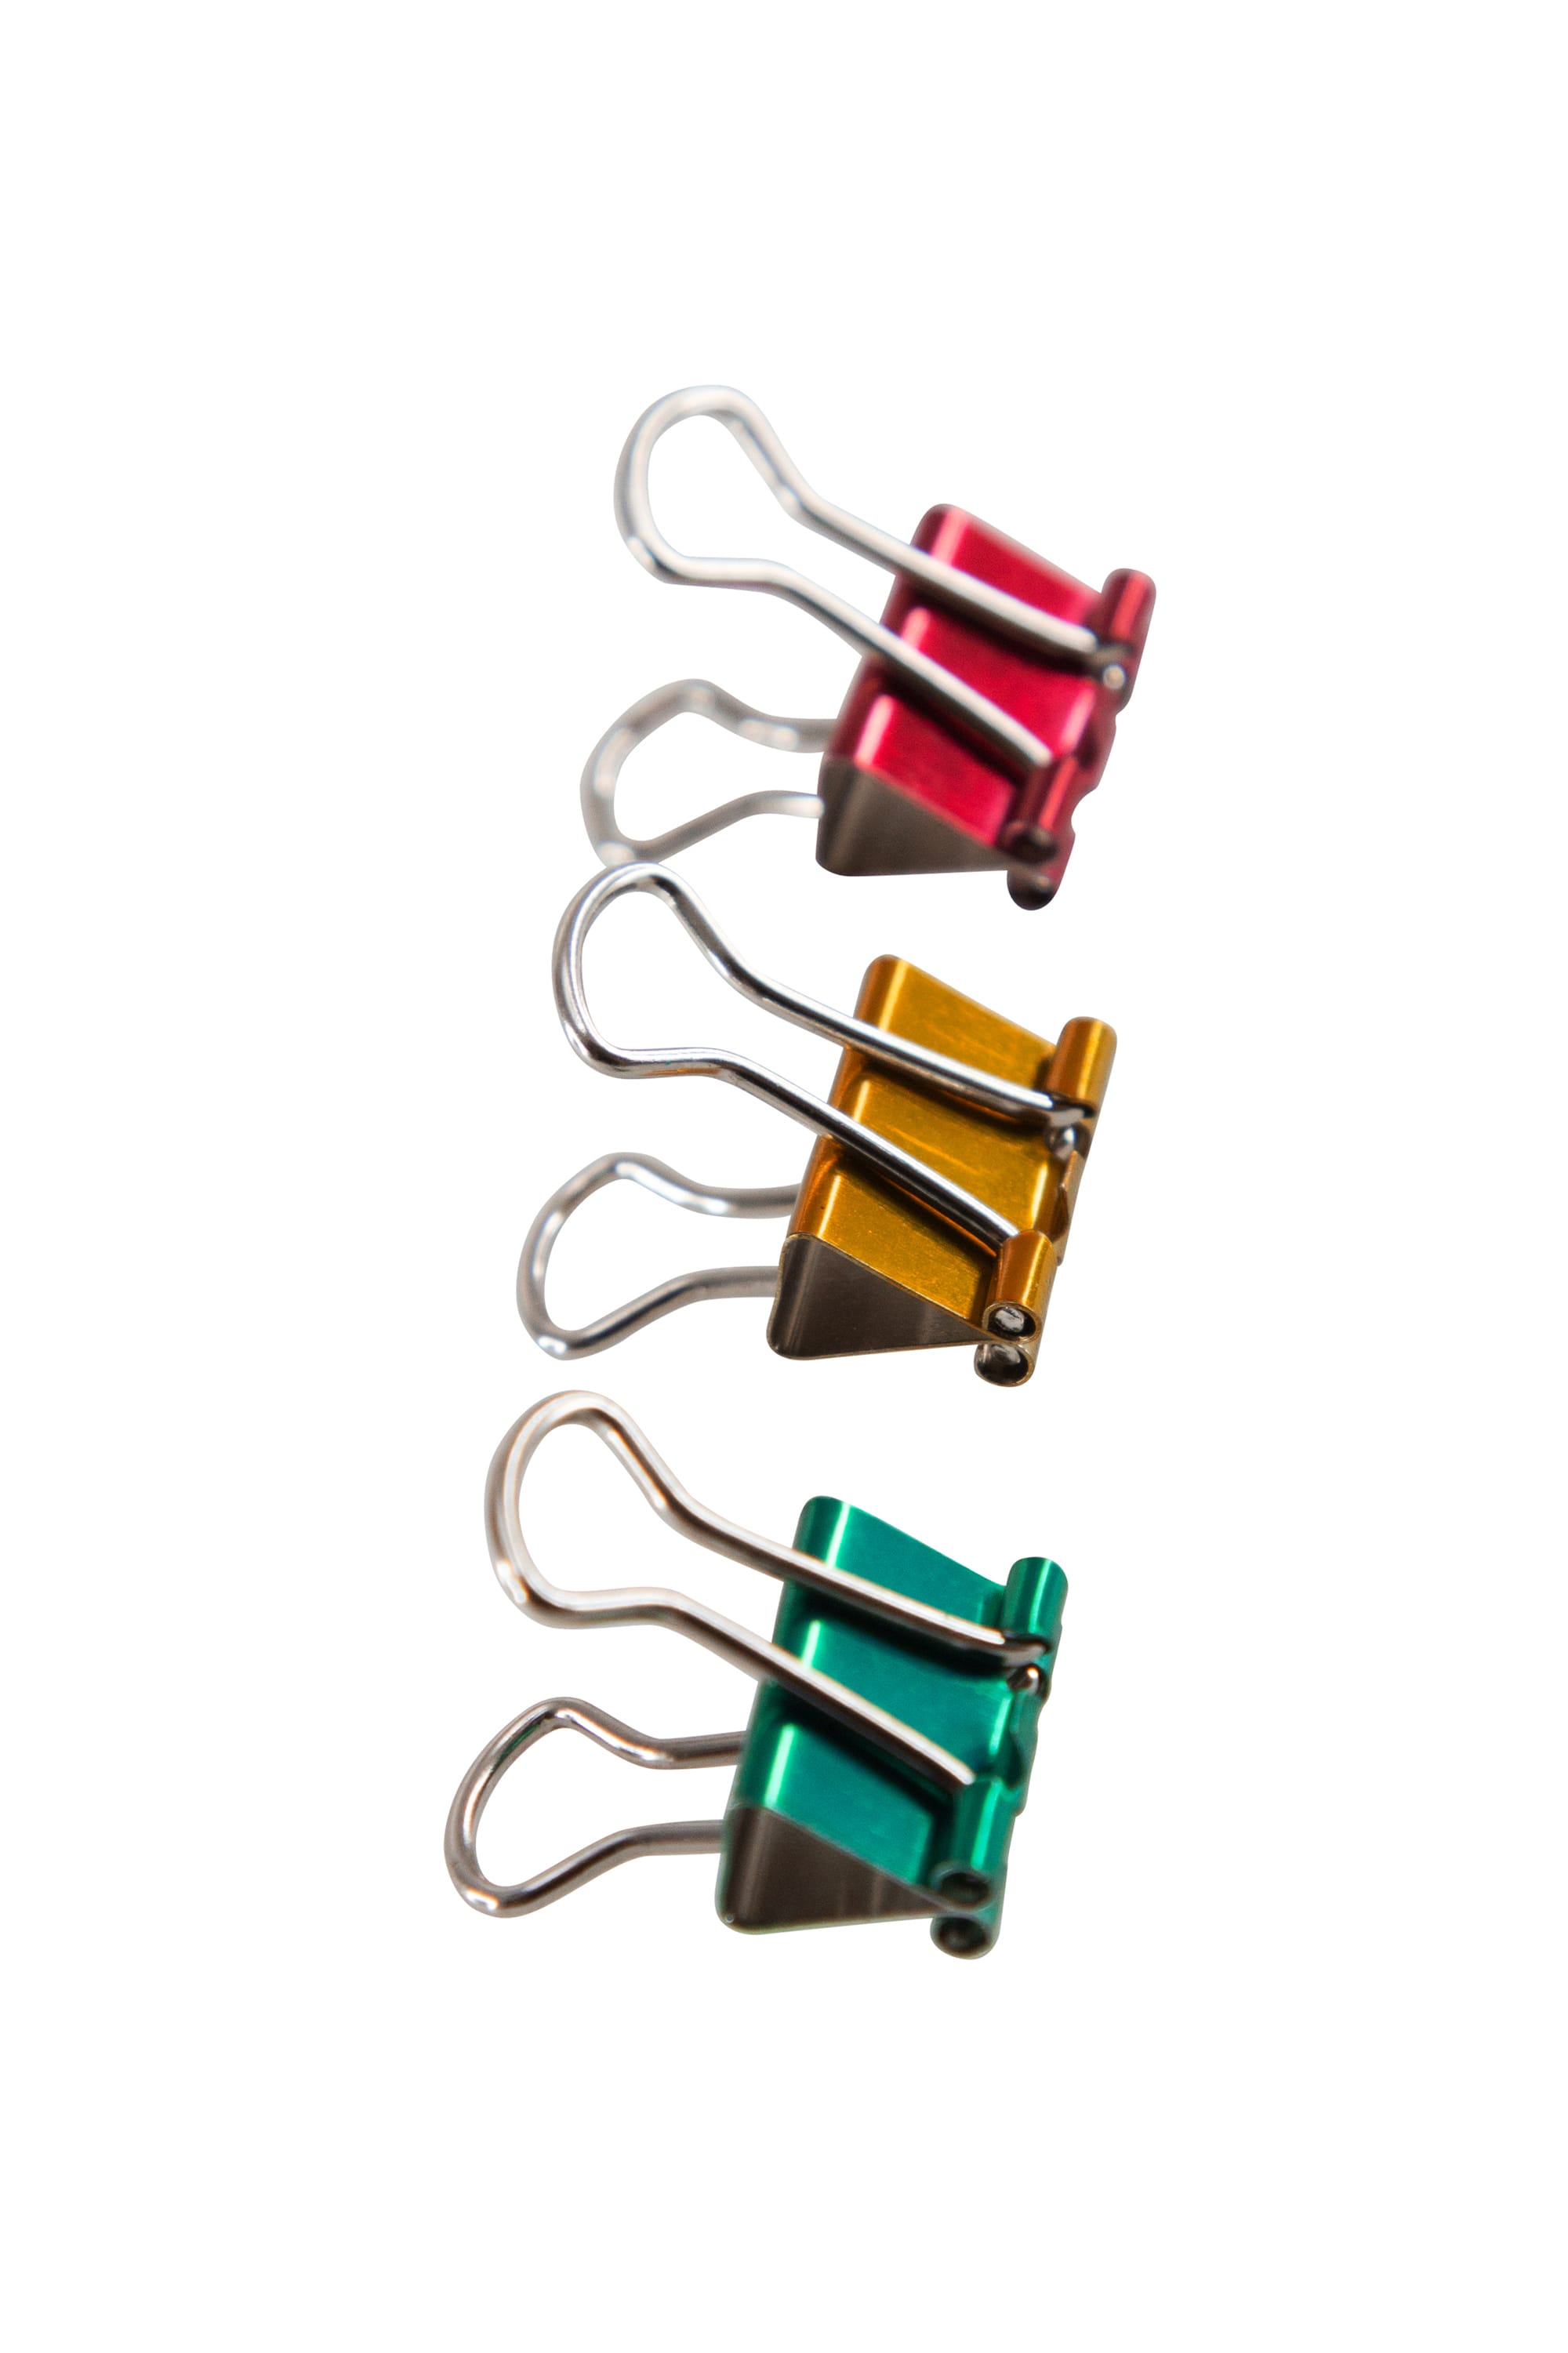 Baumgartens Metallic Designer Binder Clips Small 8 Pack ASSORTED Color –  Baumgartens 